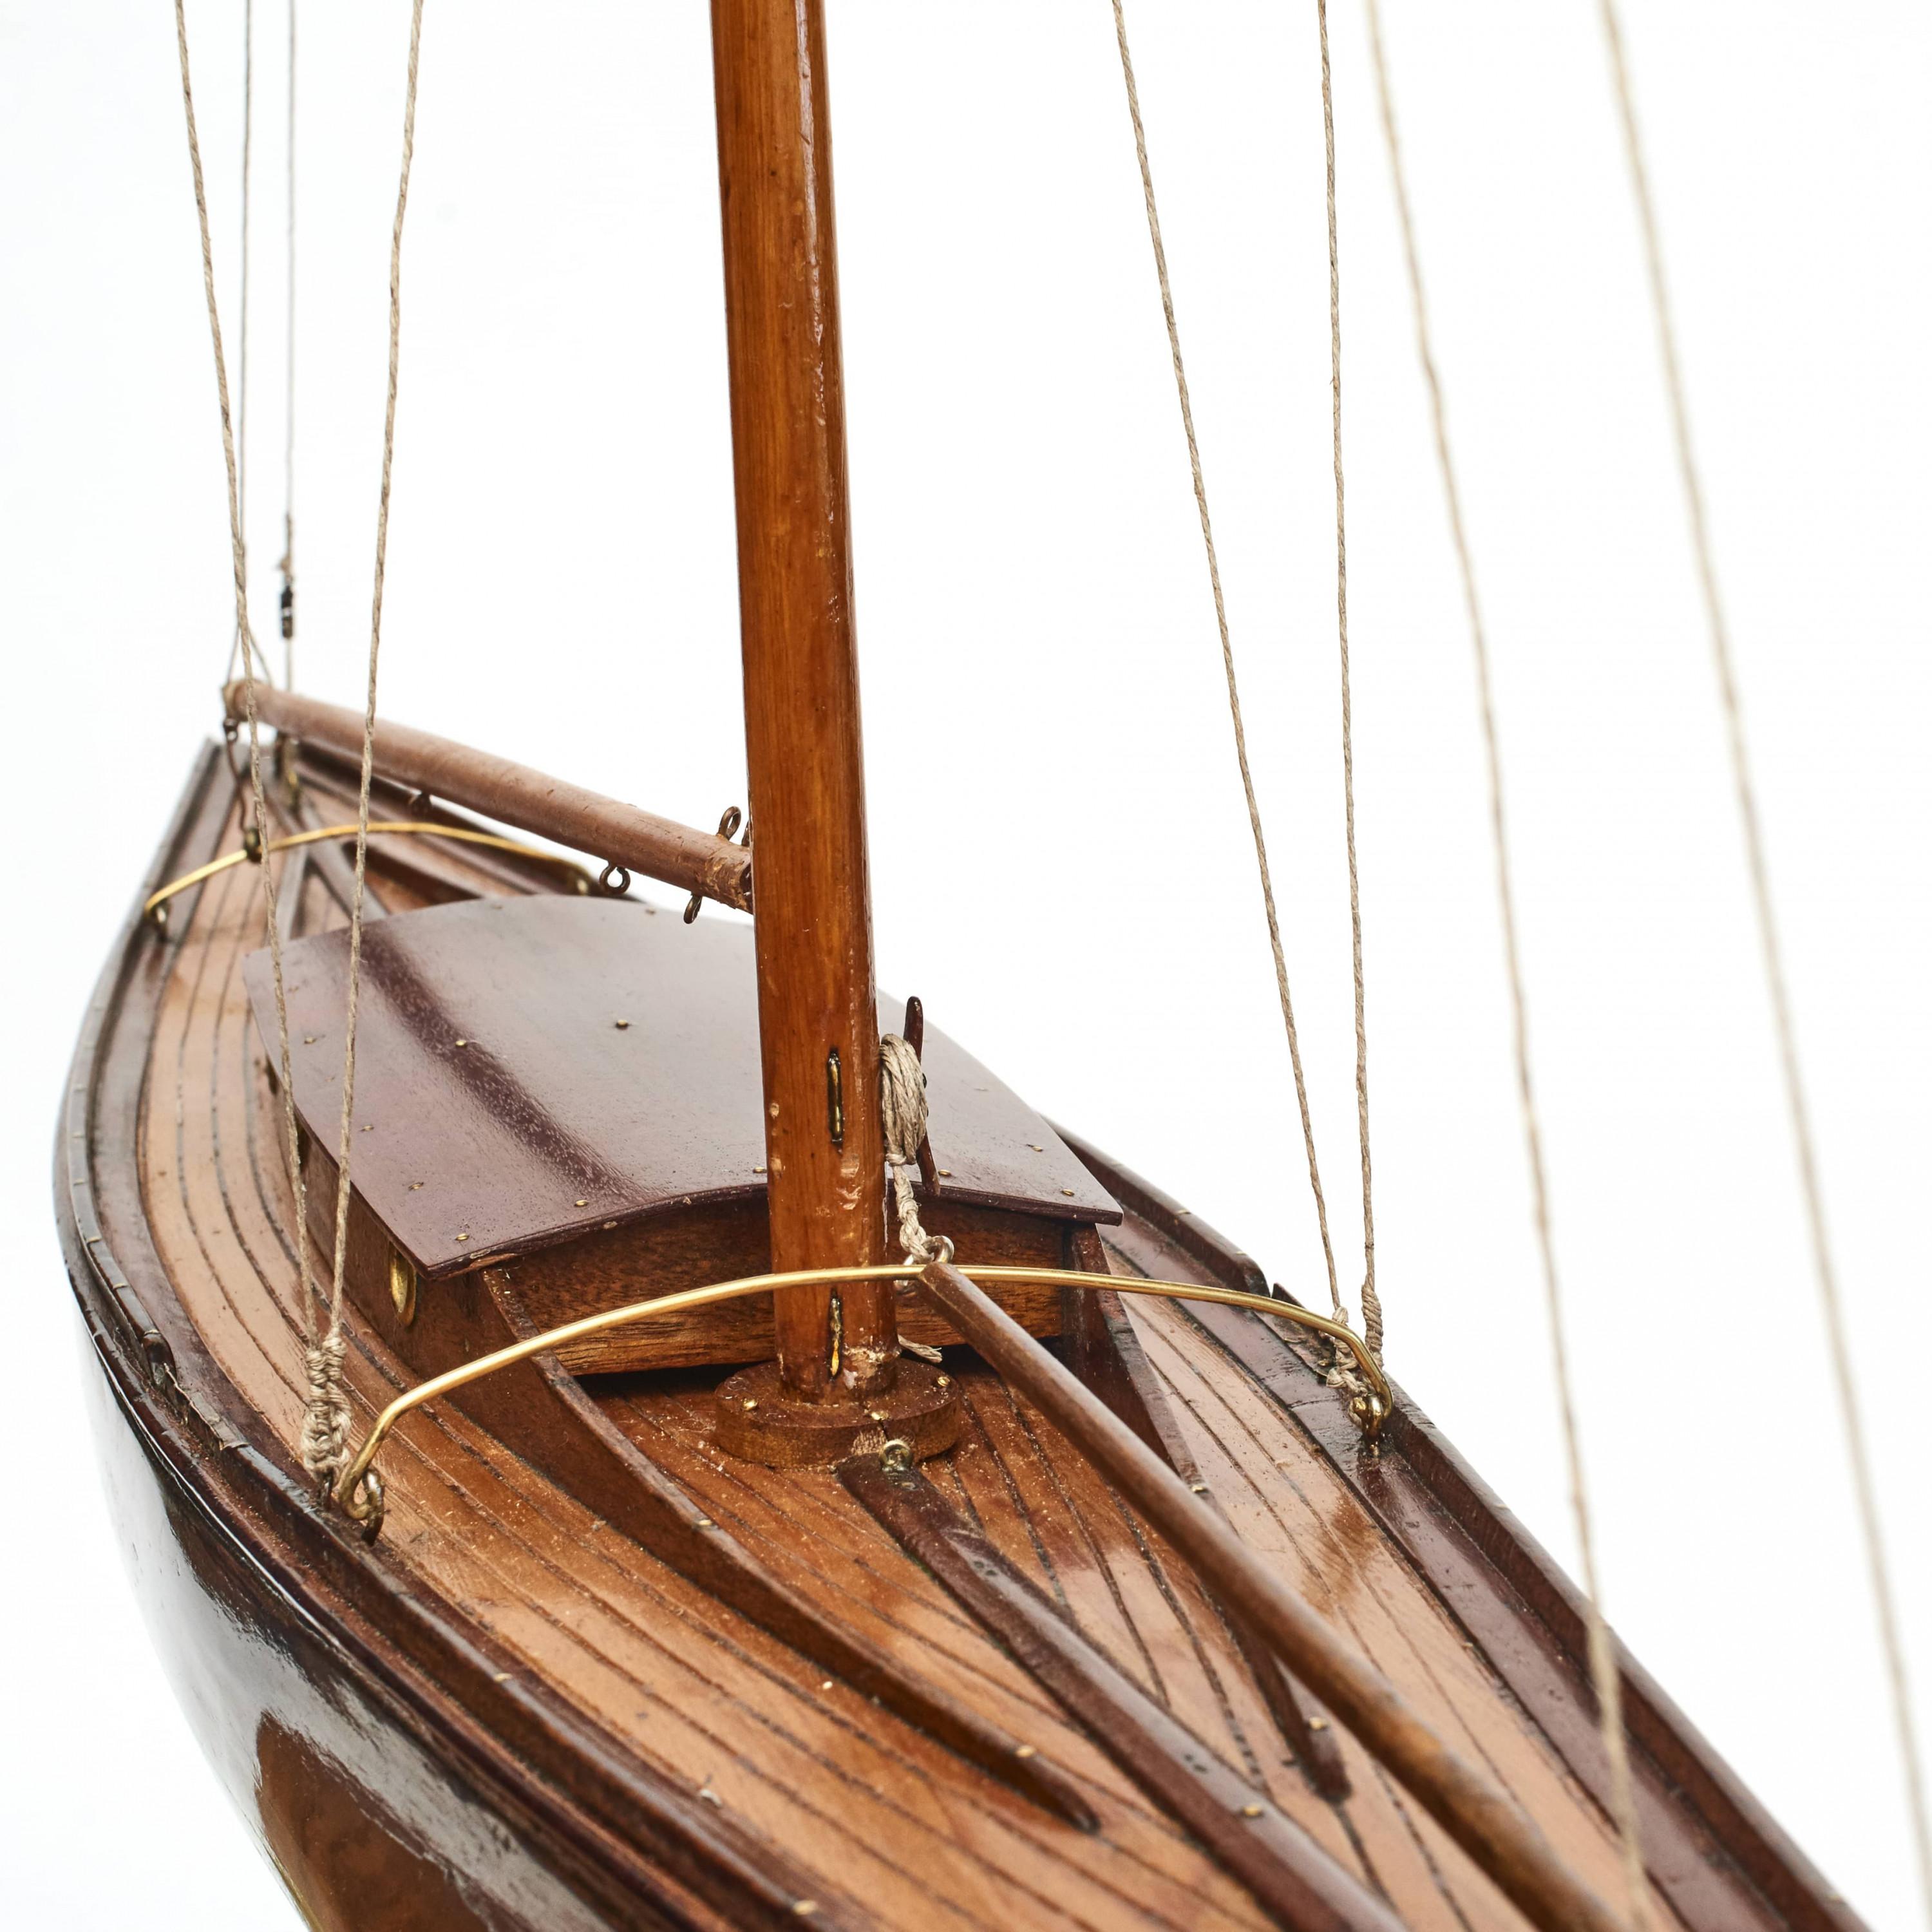 Élégante maquette de bateau/étang en bois, en acajou. Quille en tête.
Coque du navire peinte en vert.
De haute qualité, fabriqués à la main.
Sur son socle d'origine en acajou.

Angleterre vers 1930.